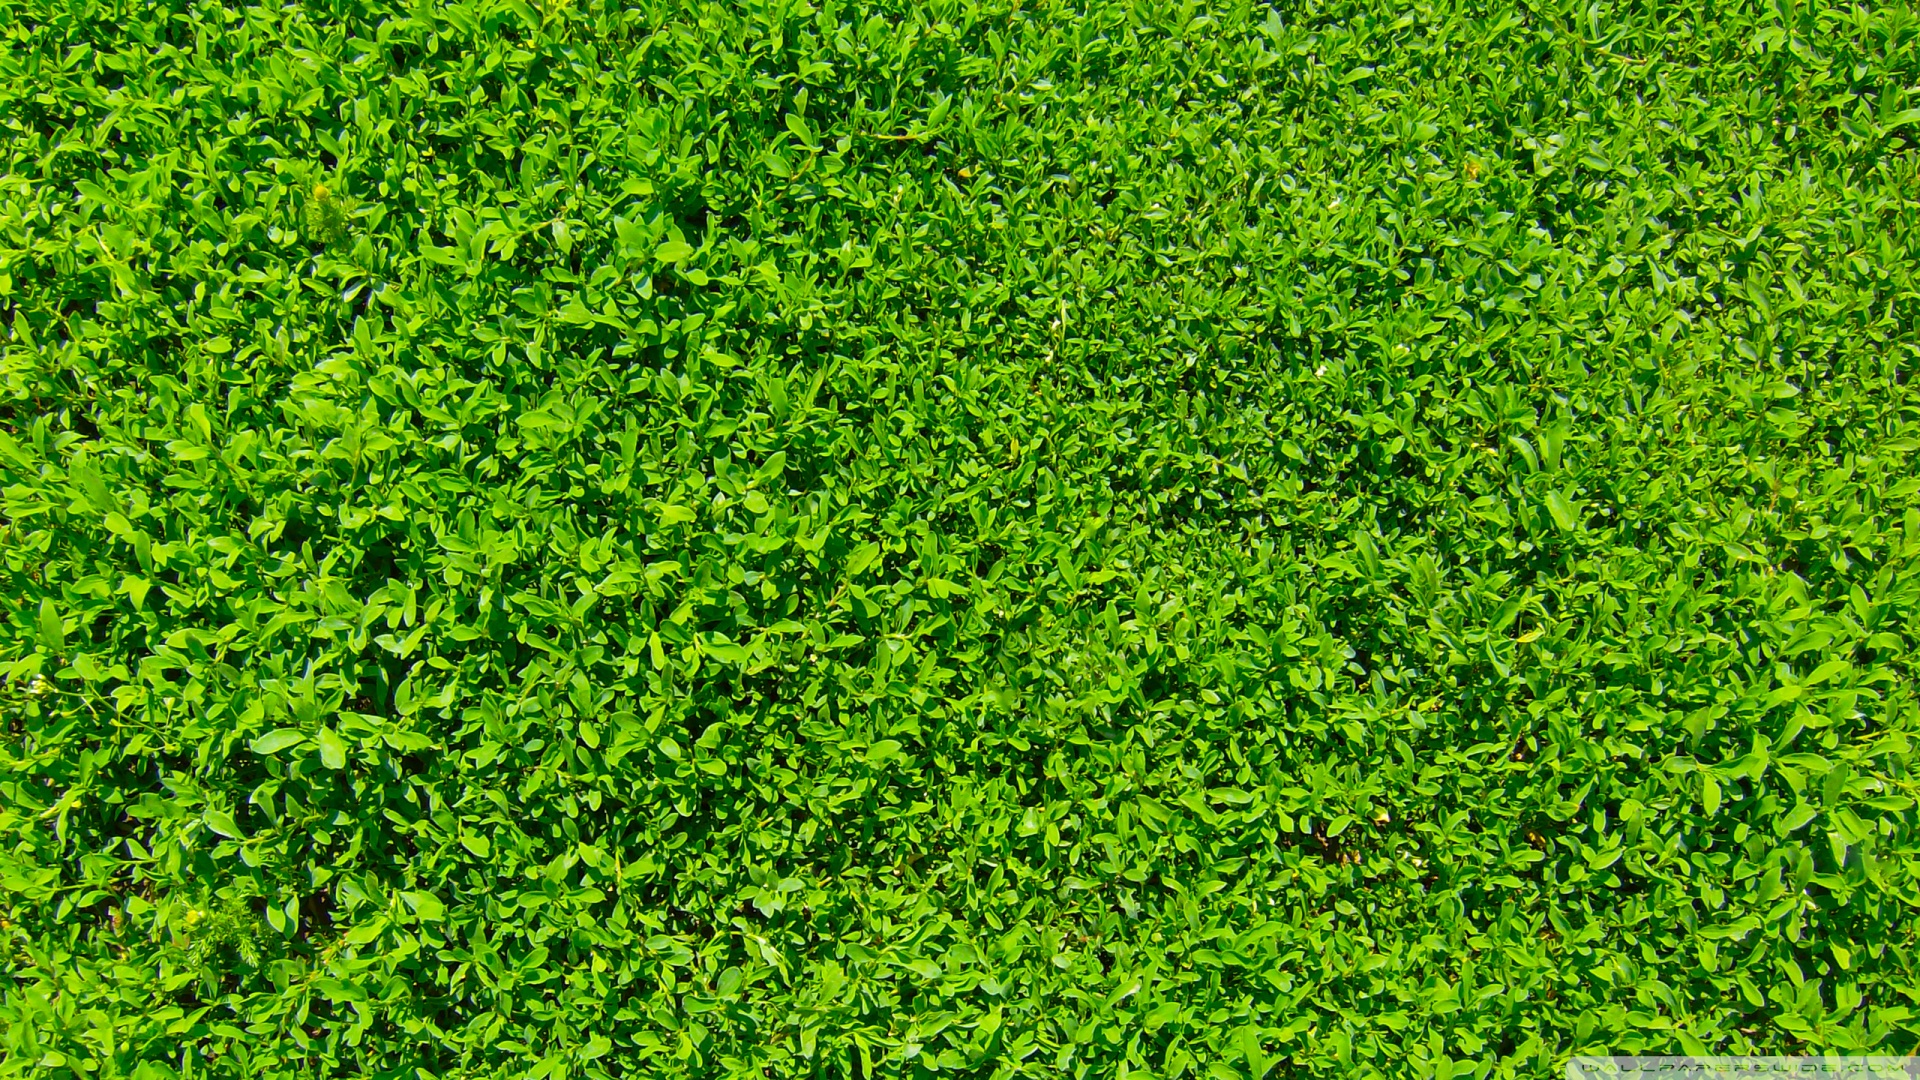 Download Green Grass 01 Wallpaper 1920x1080 Wallpoper